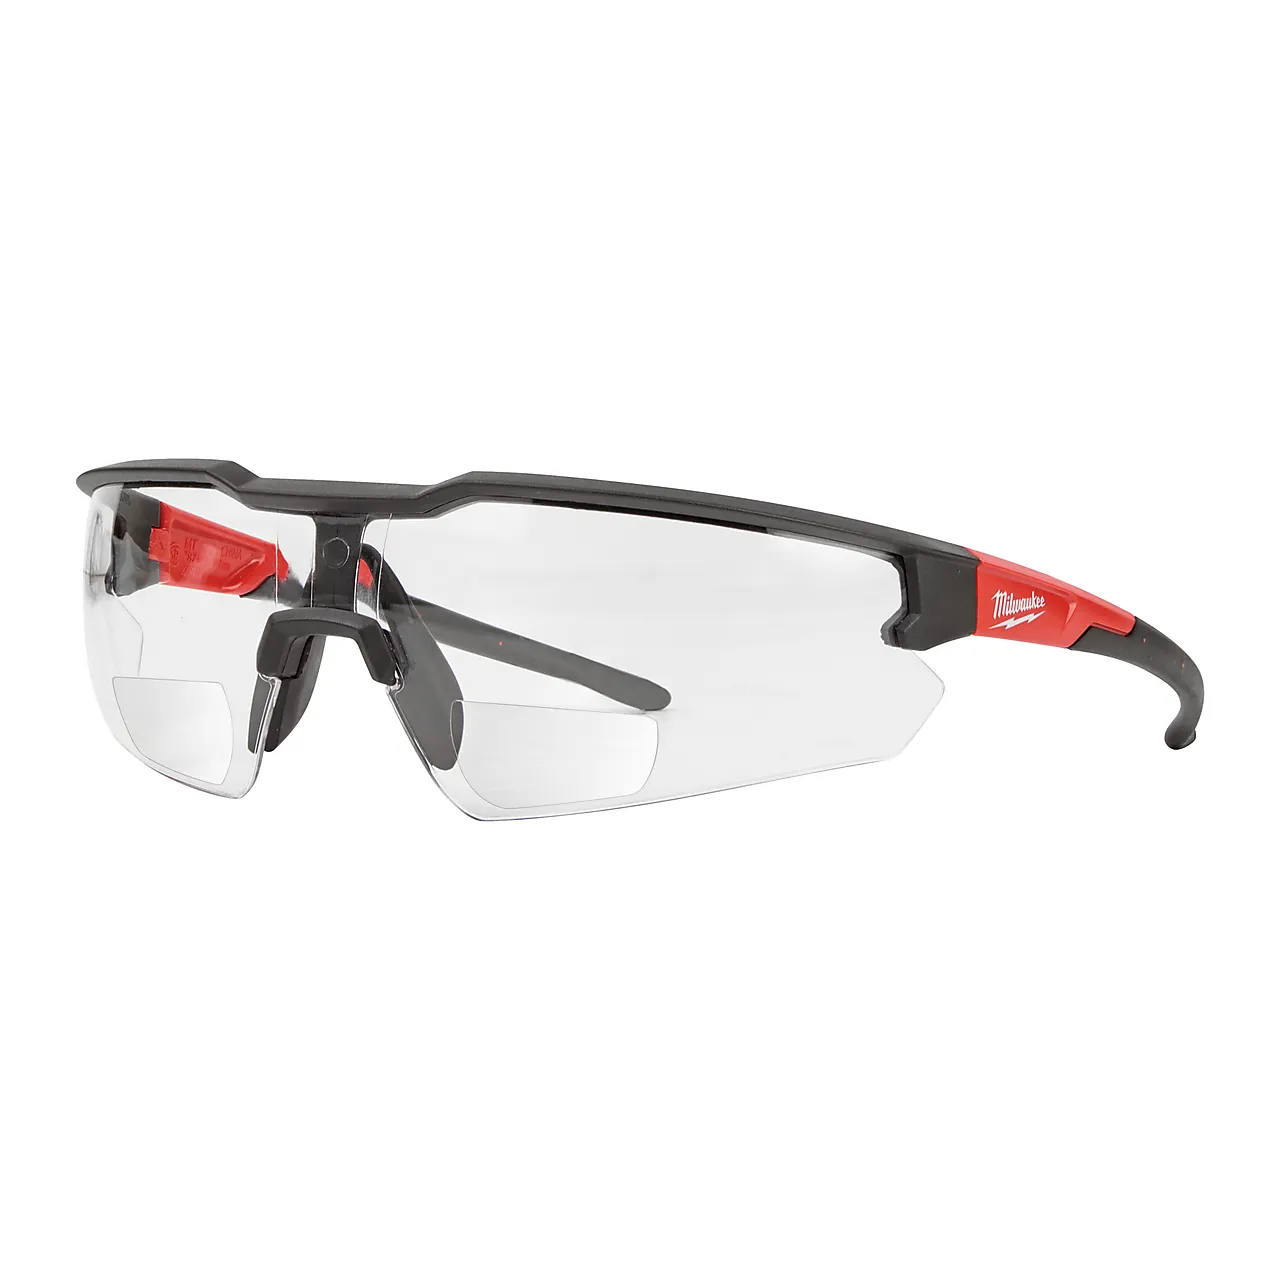 Vernebriller magnified +2,5 klar